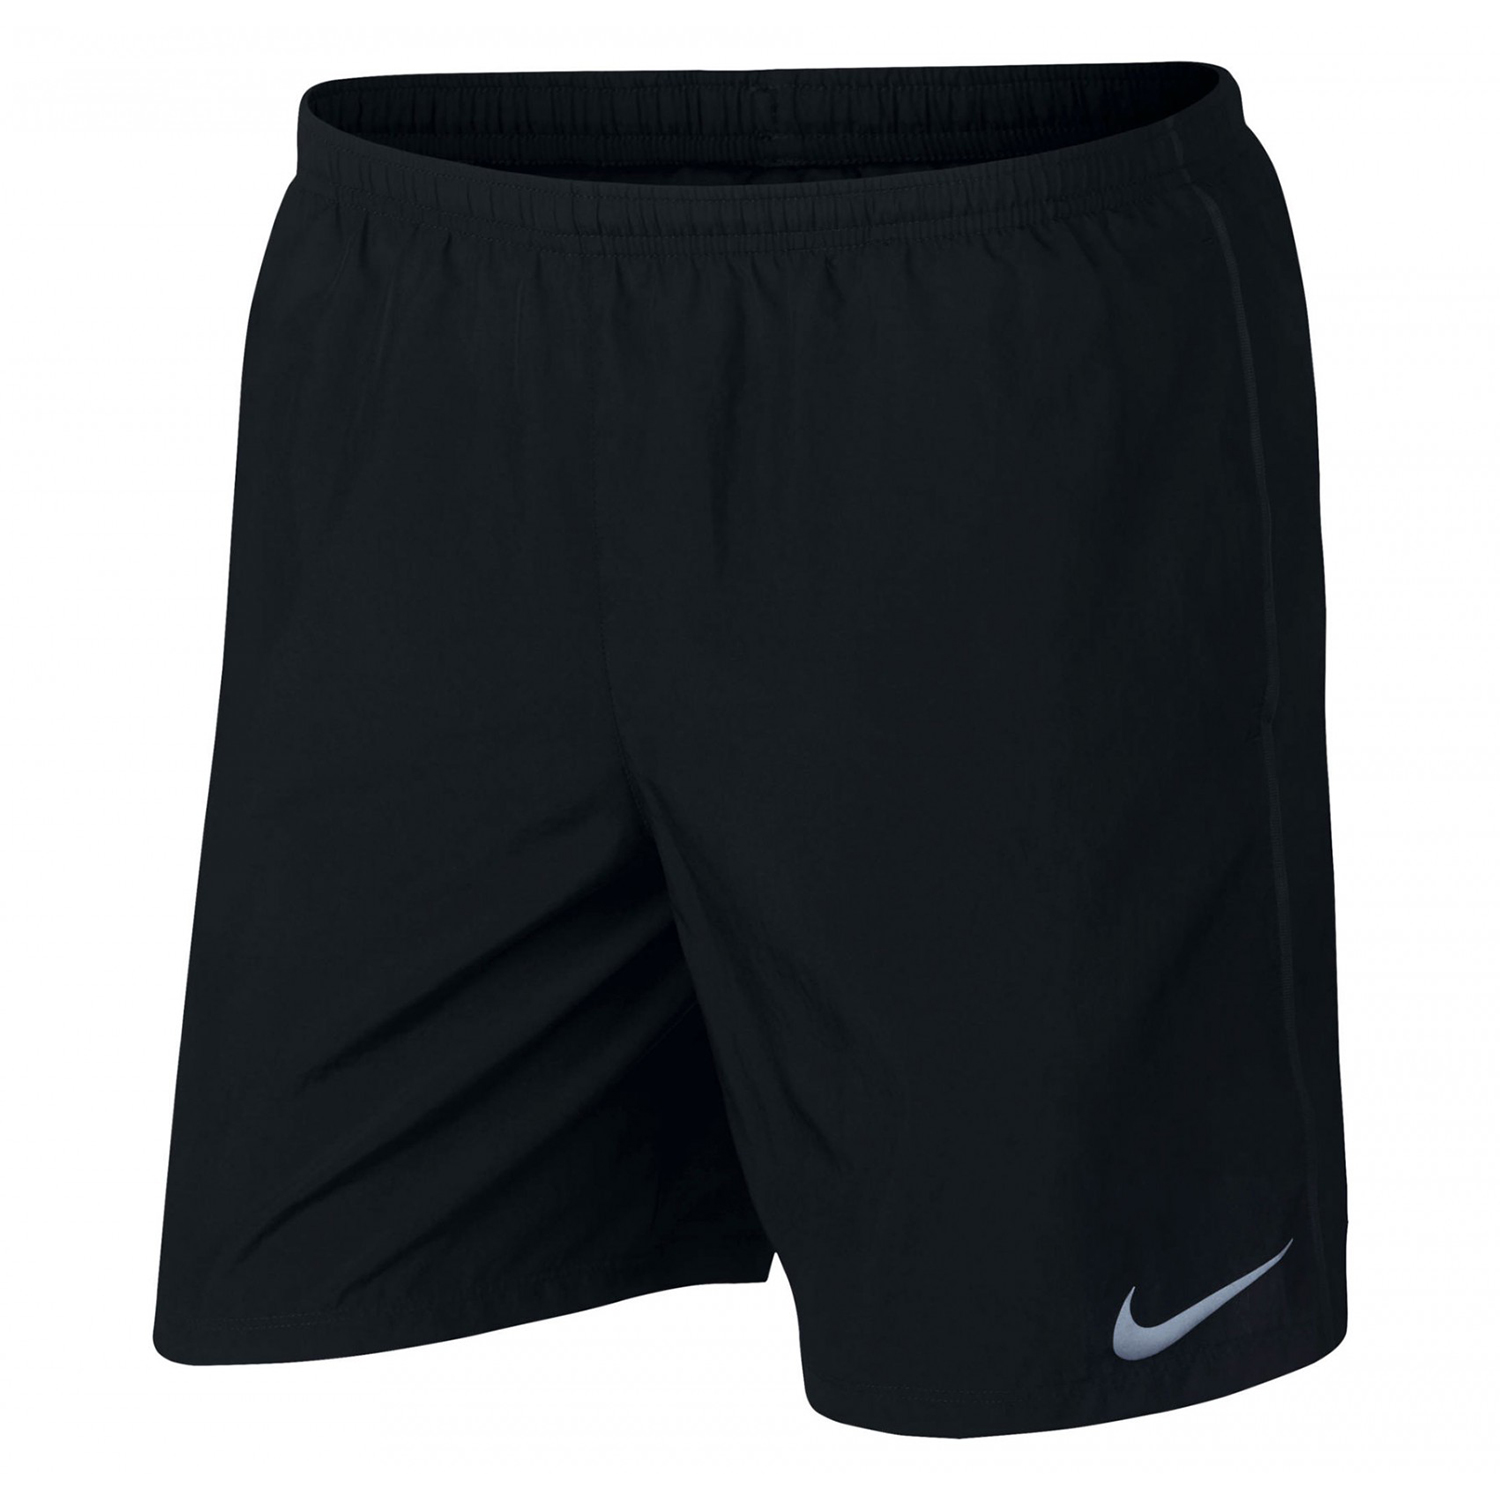 Шорты мужские Nike Run Short 7 черные S - характеристики и описание на Мегамаркет